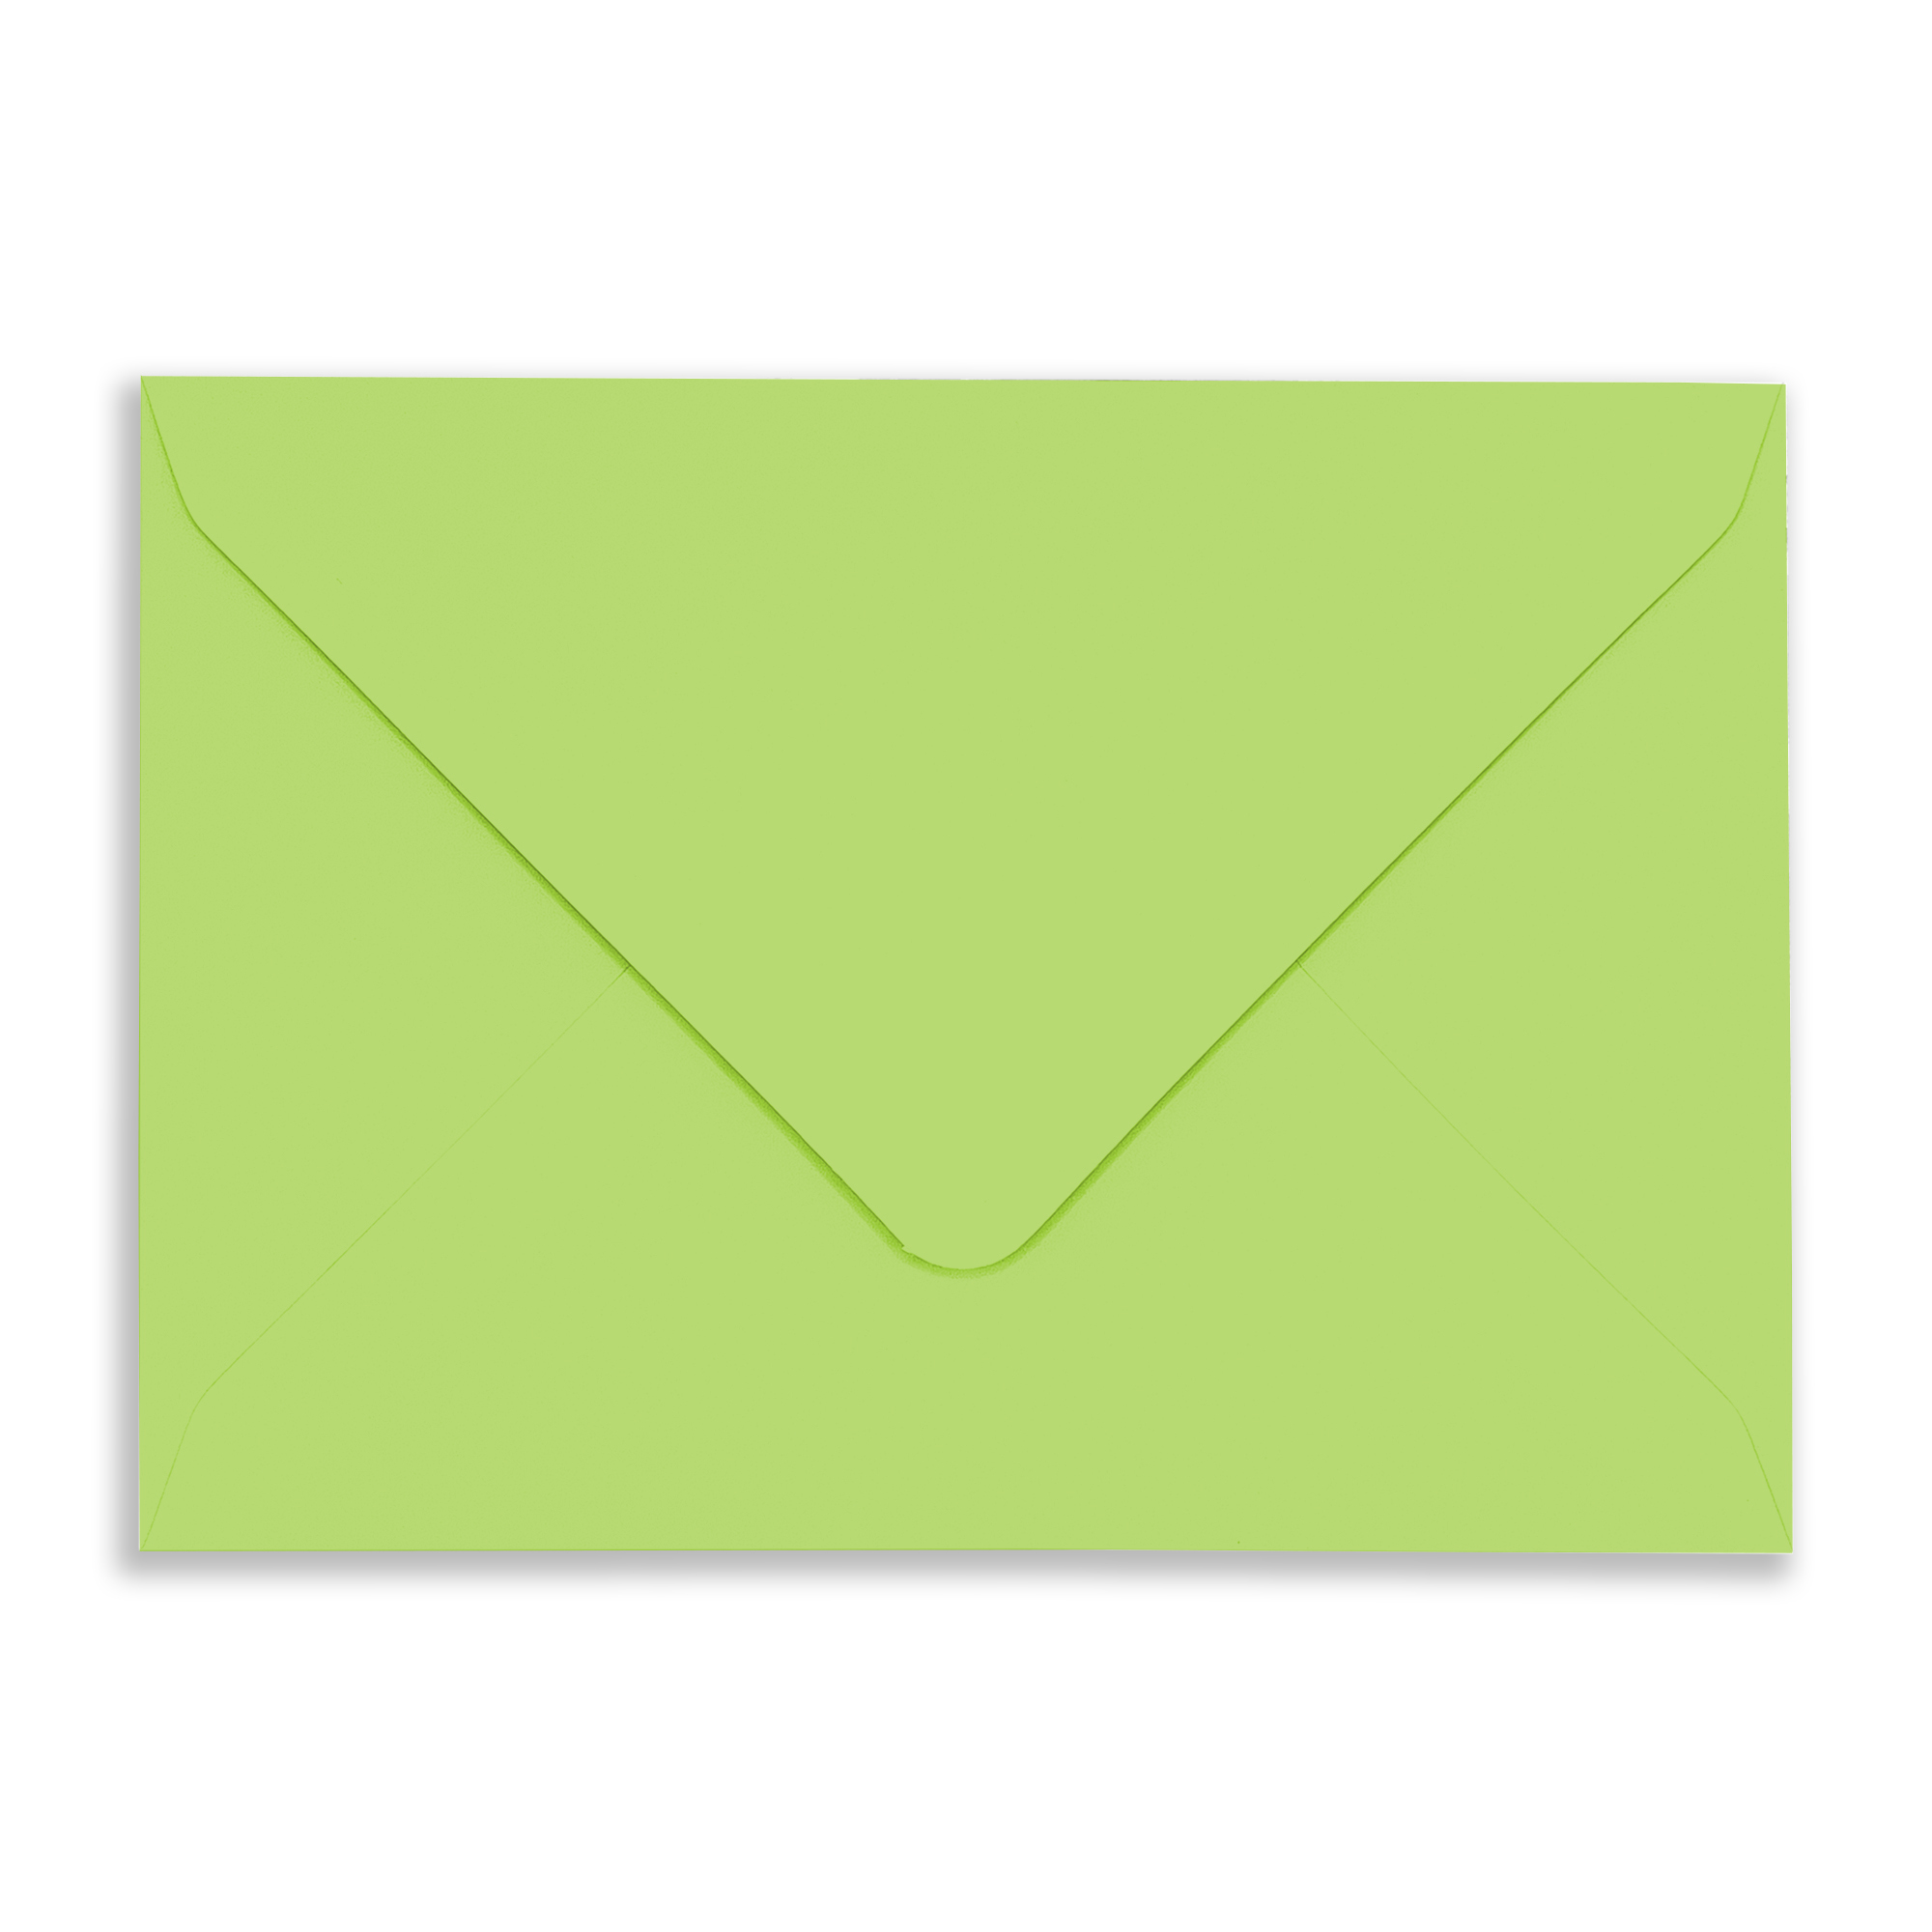 Rec-Chatreuse_Envelope_Flap